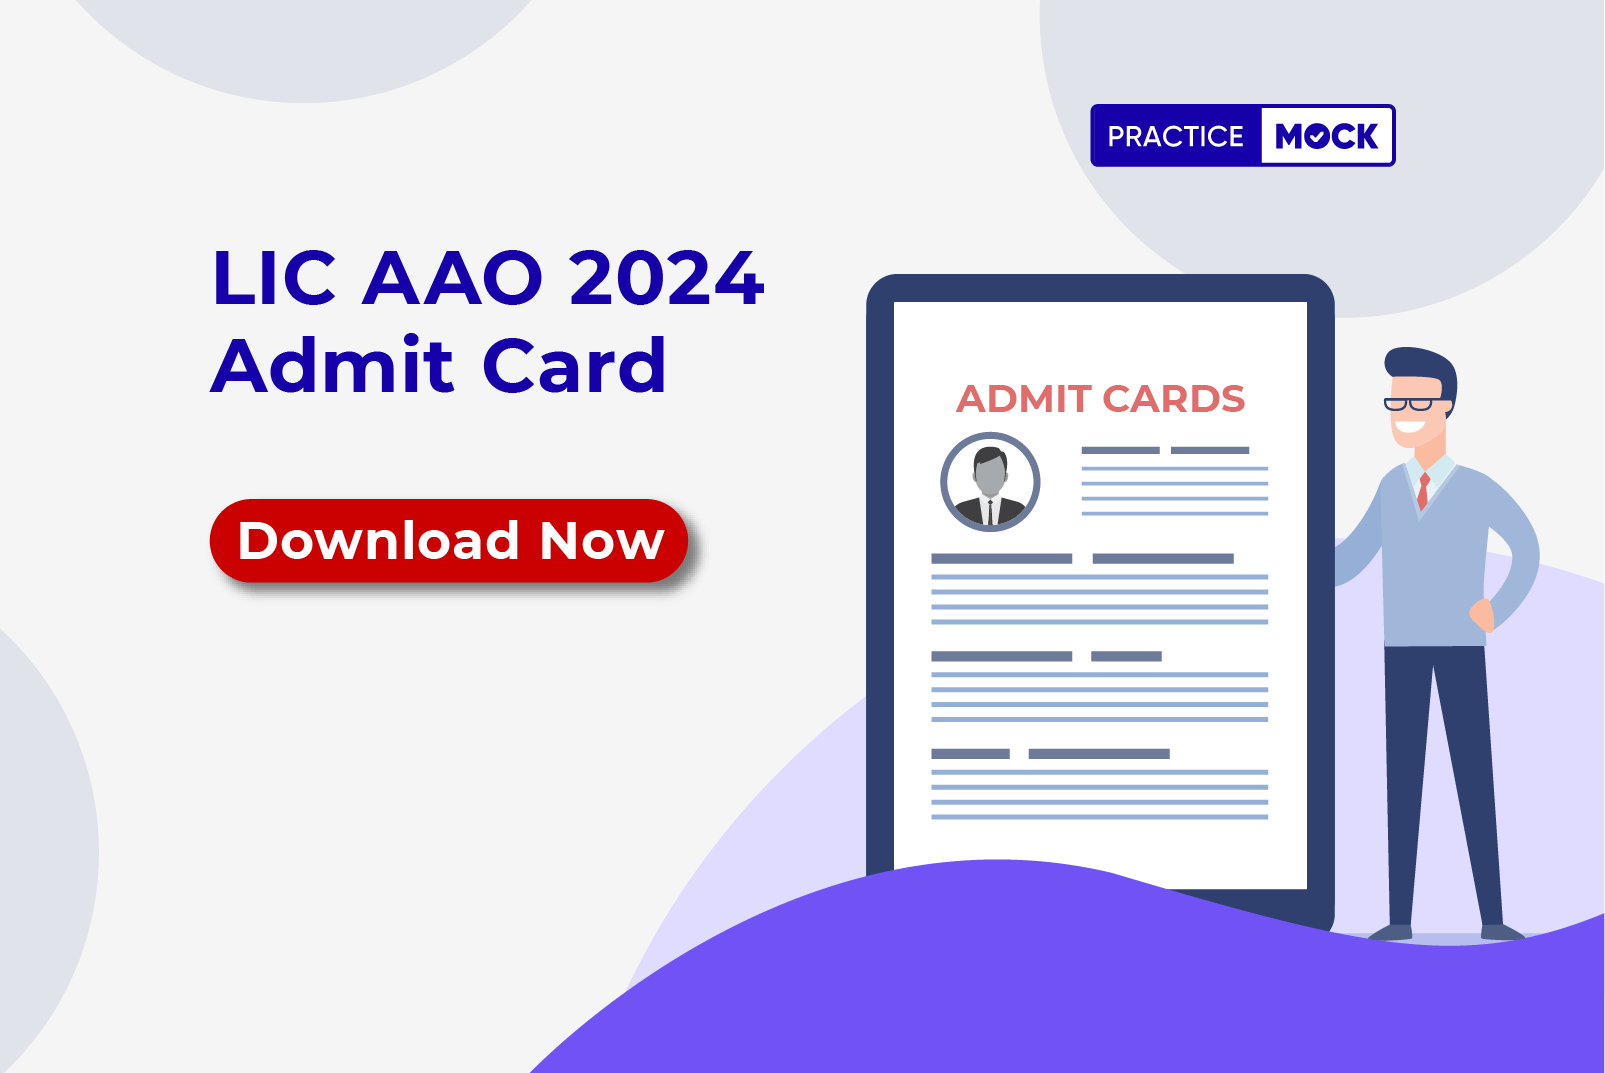 LIC AAO 2024 Admit Card